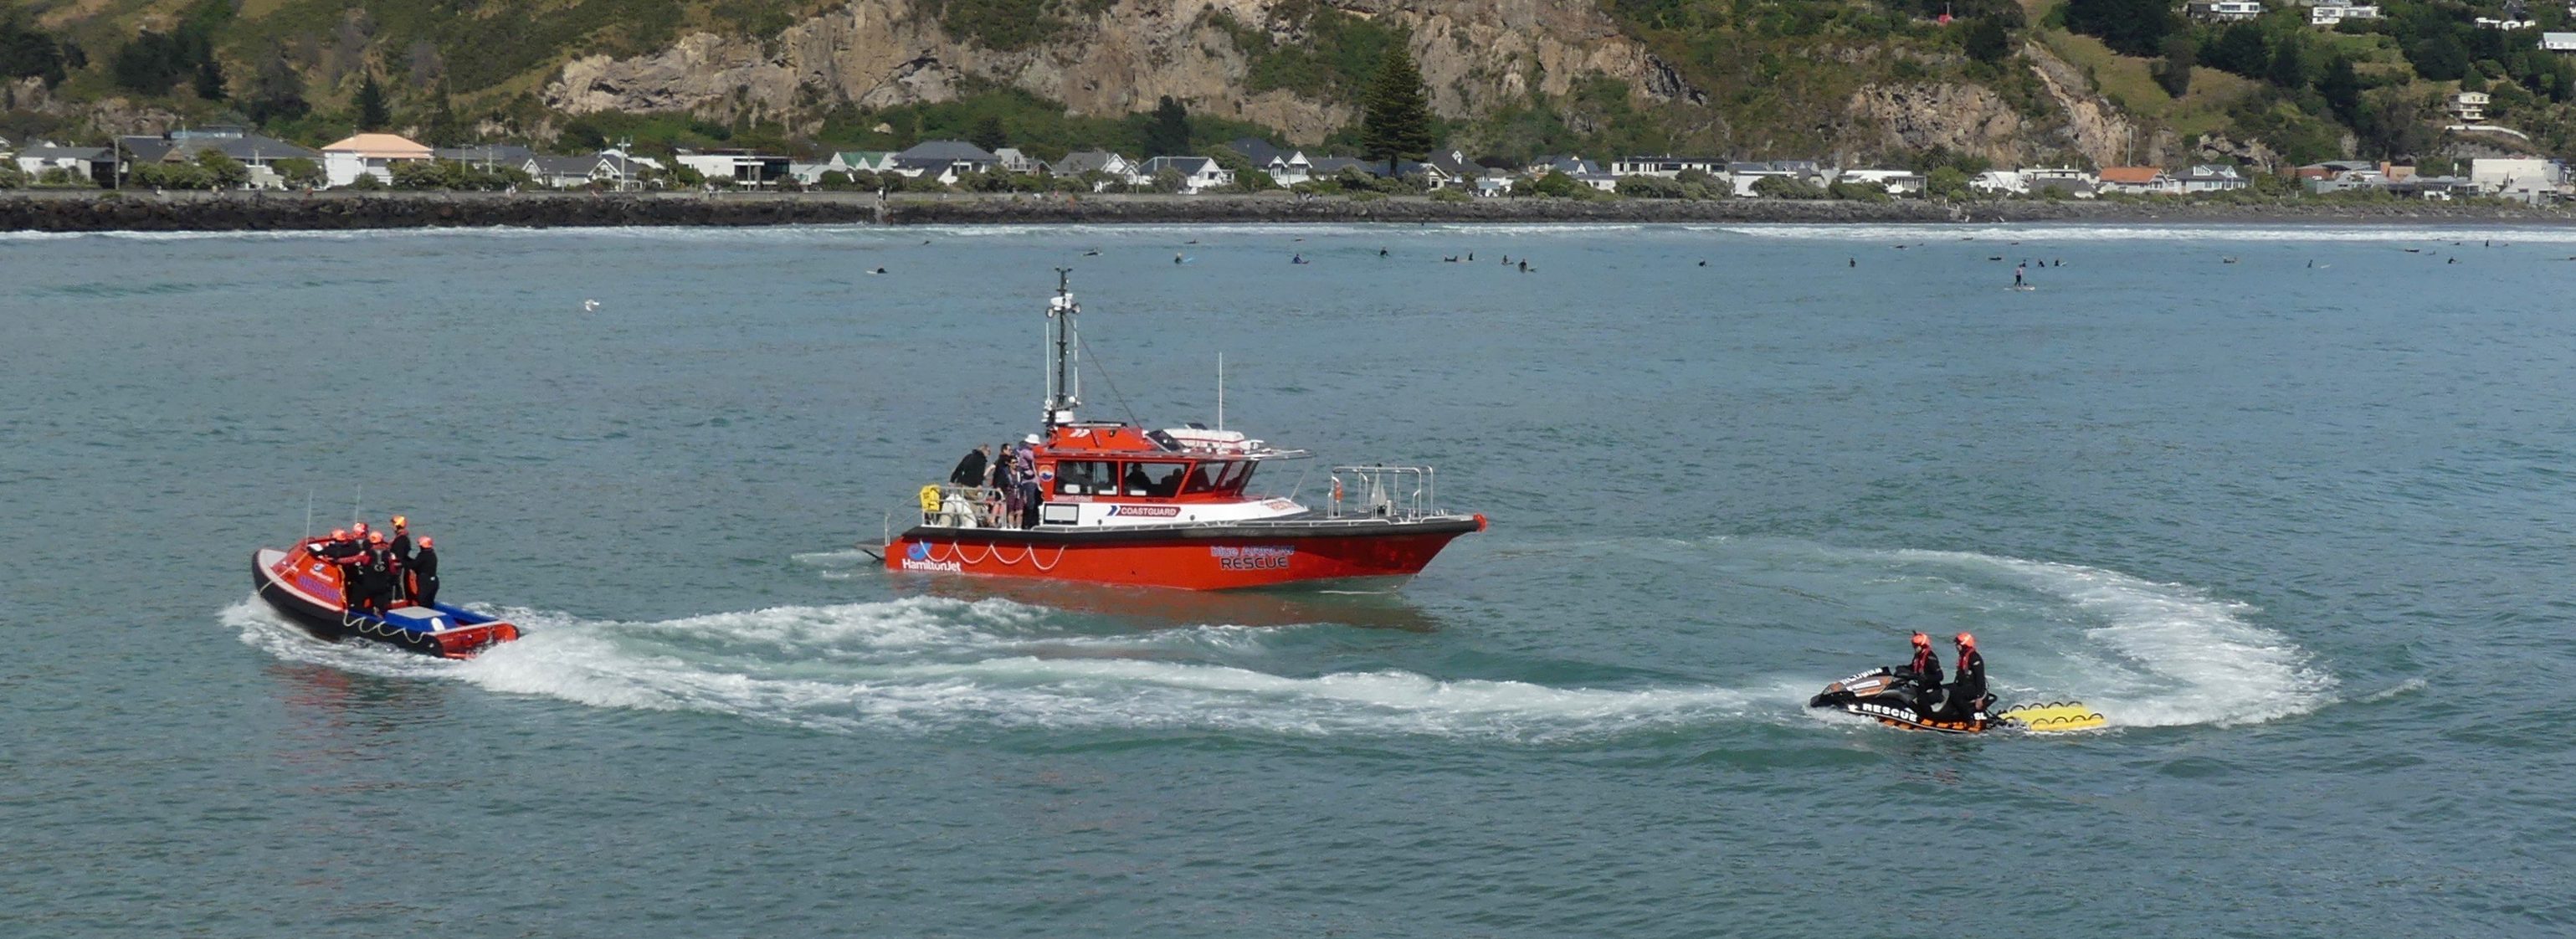 3 vessels - Blue Arrow Rescue, Urquhart Trust Rescue, Hamilton Jet Rescue